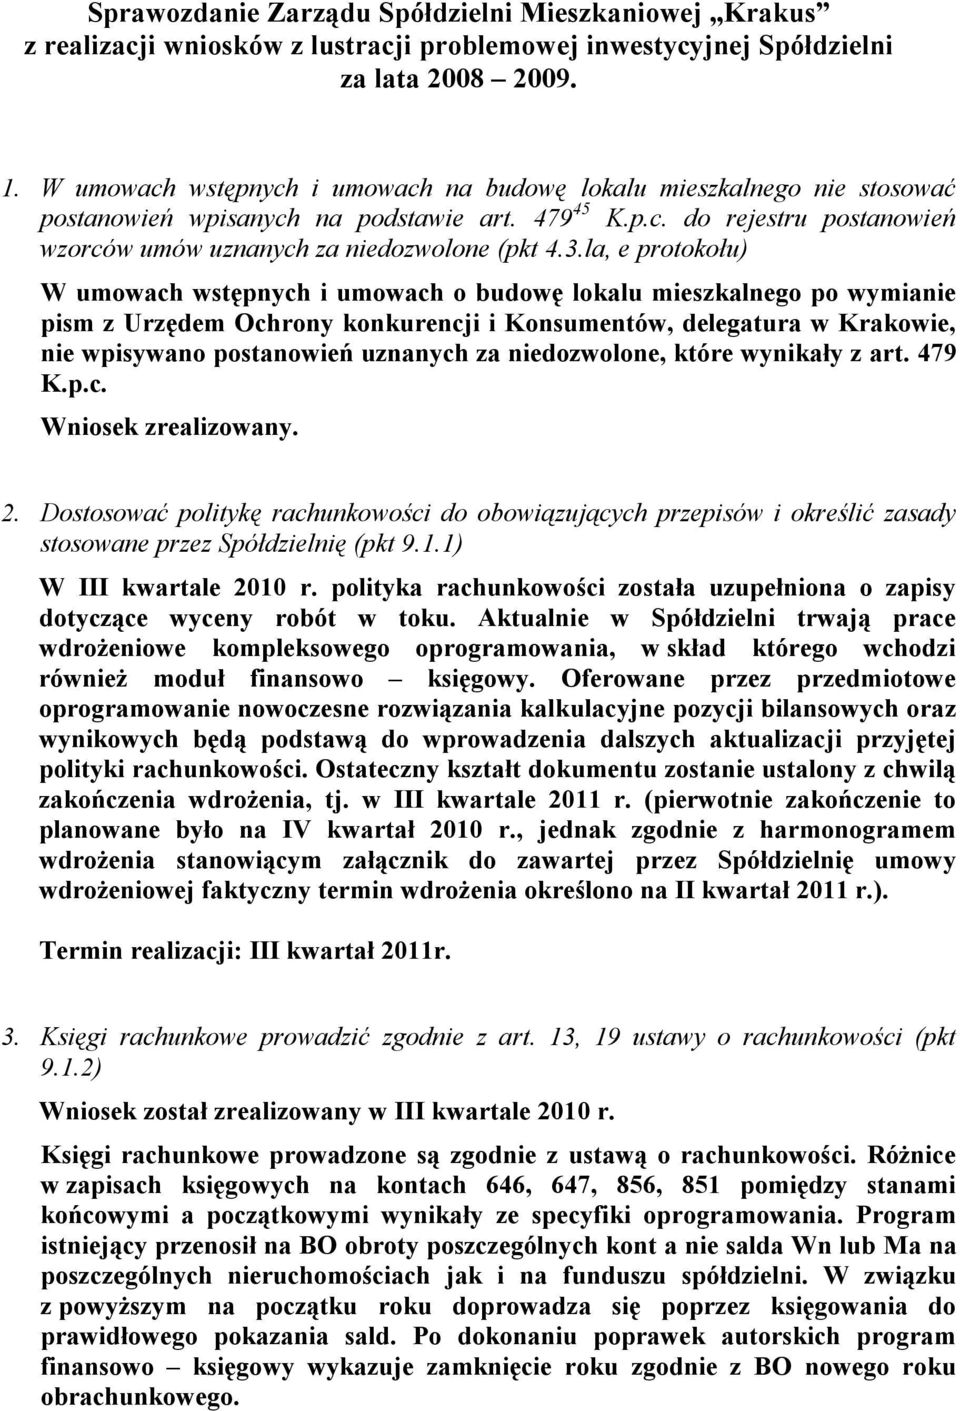 la, e protokołu) W umowach wstępnych i umowach o budowę lokalu mieszkalnego po wymianie pism z Urzędem Ochrony konkurencji i Konsumentów, delegatura w Krakowie, nie wpisywano postanowień uznanych za